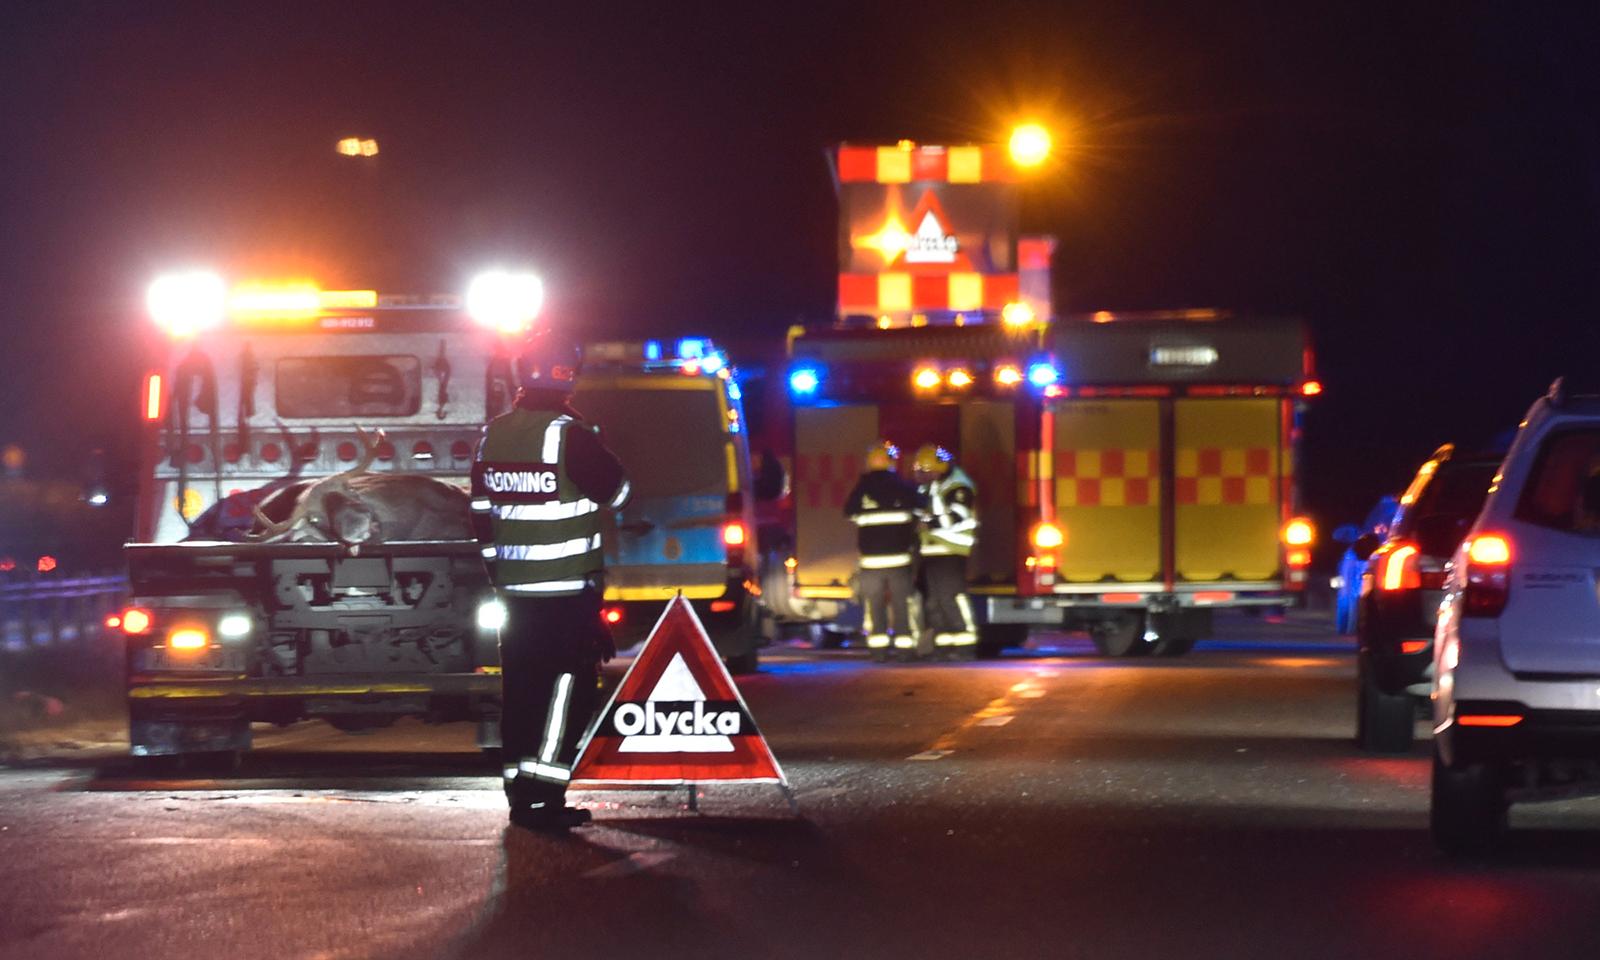 Viltolycka med en älg på RV53 mellan Nyköping och Oxelösund. En person fick föras till sjukhus och älgen fraktades bort på flak.